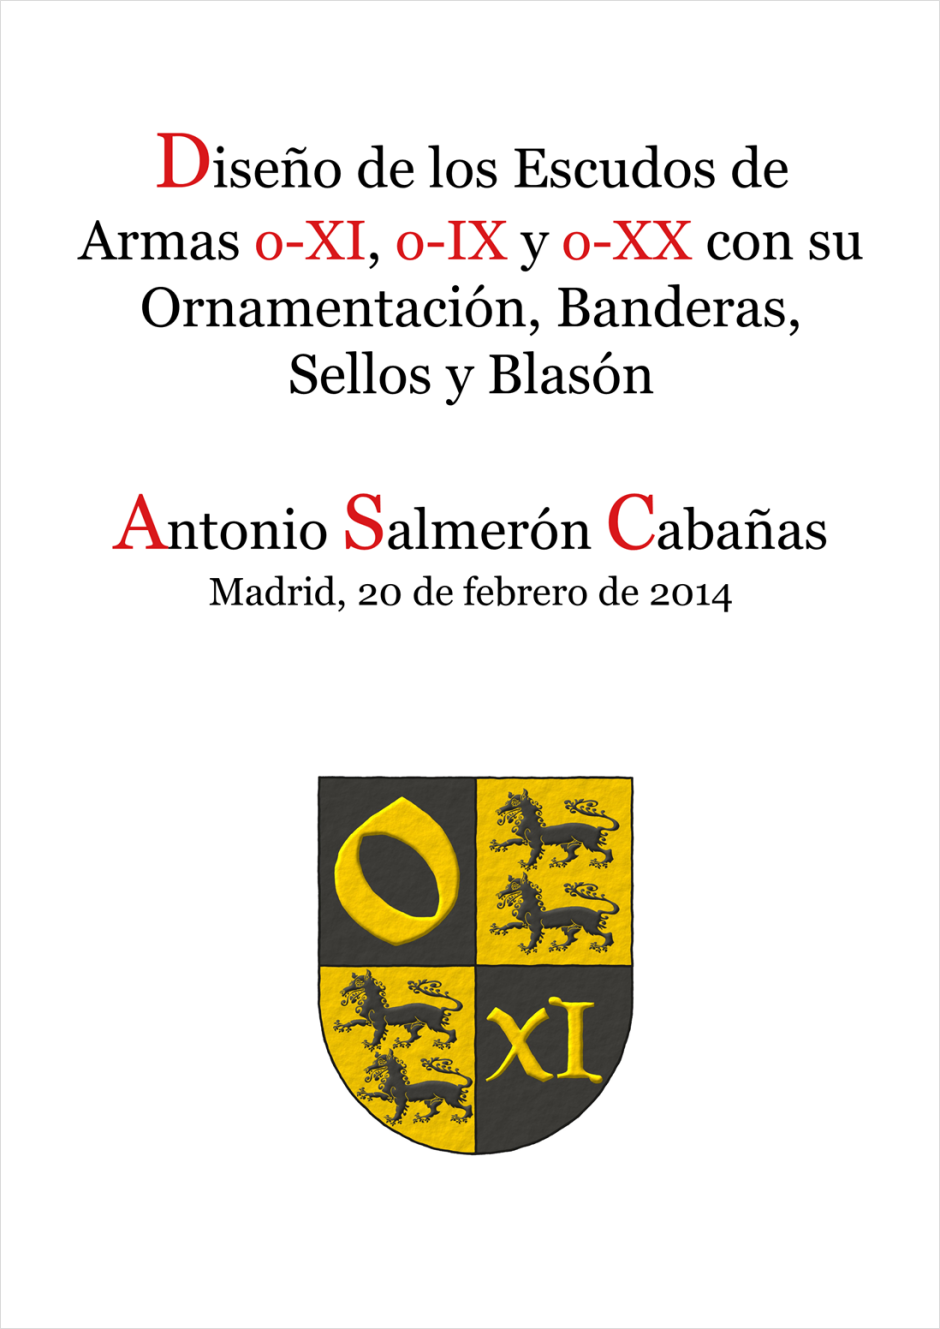 Diseo de los escudos de armas o-XI, o-IX, o-XX con su ornamentacin, banderas, sellos y blasn